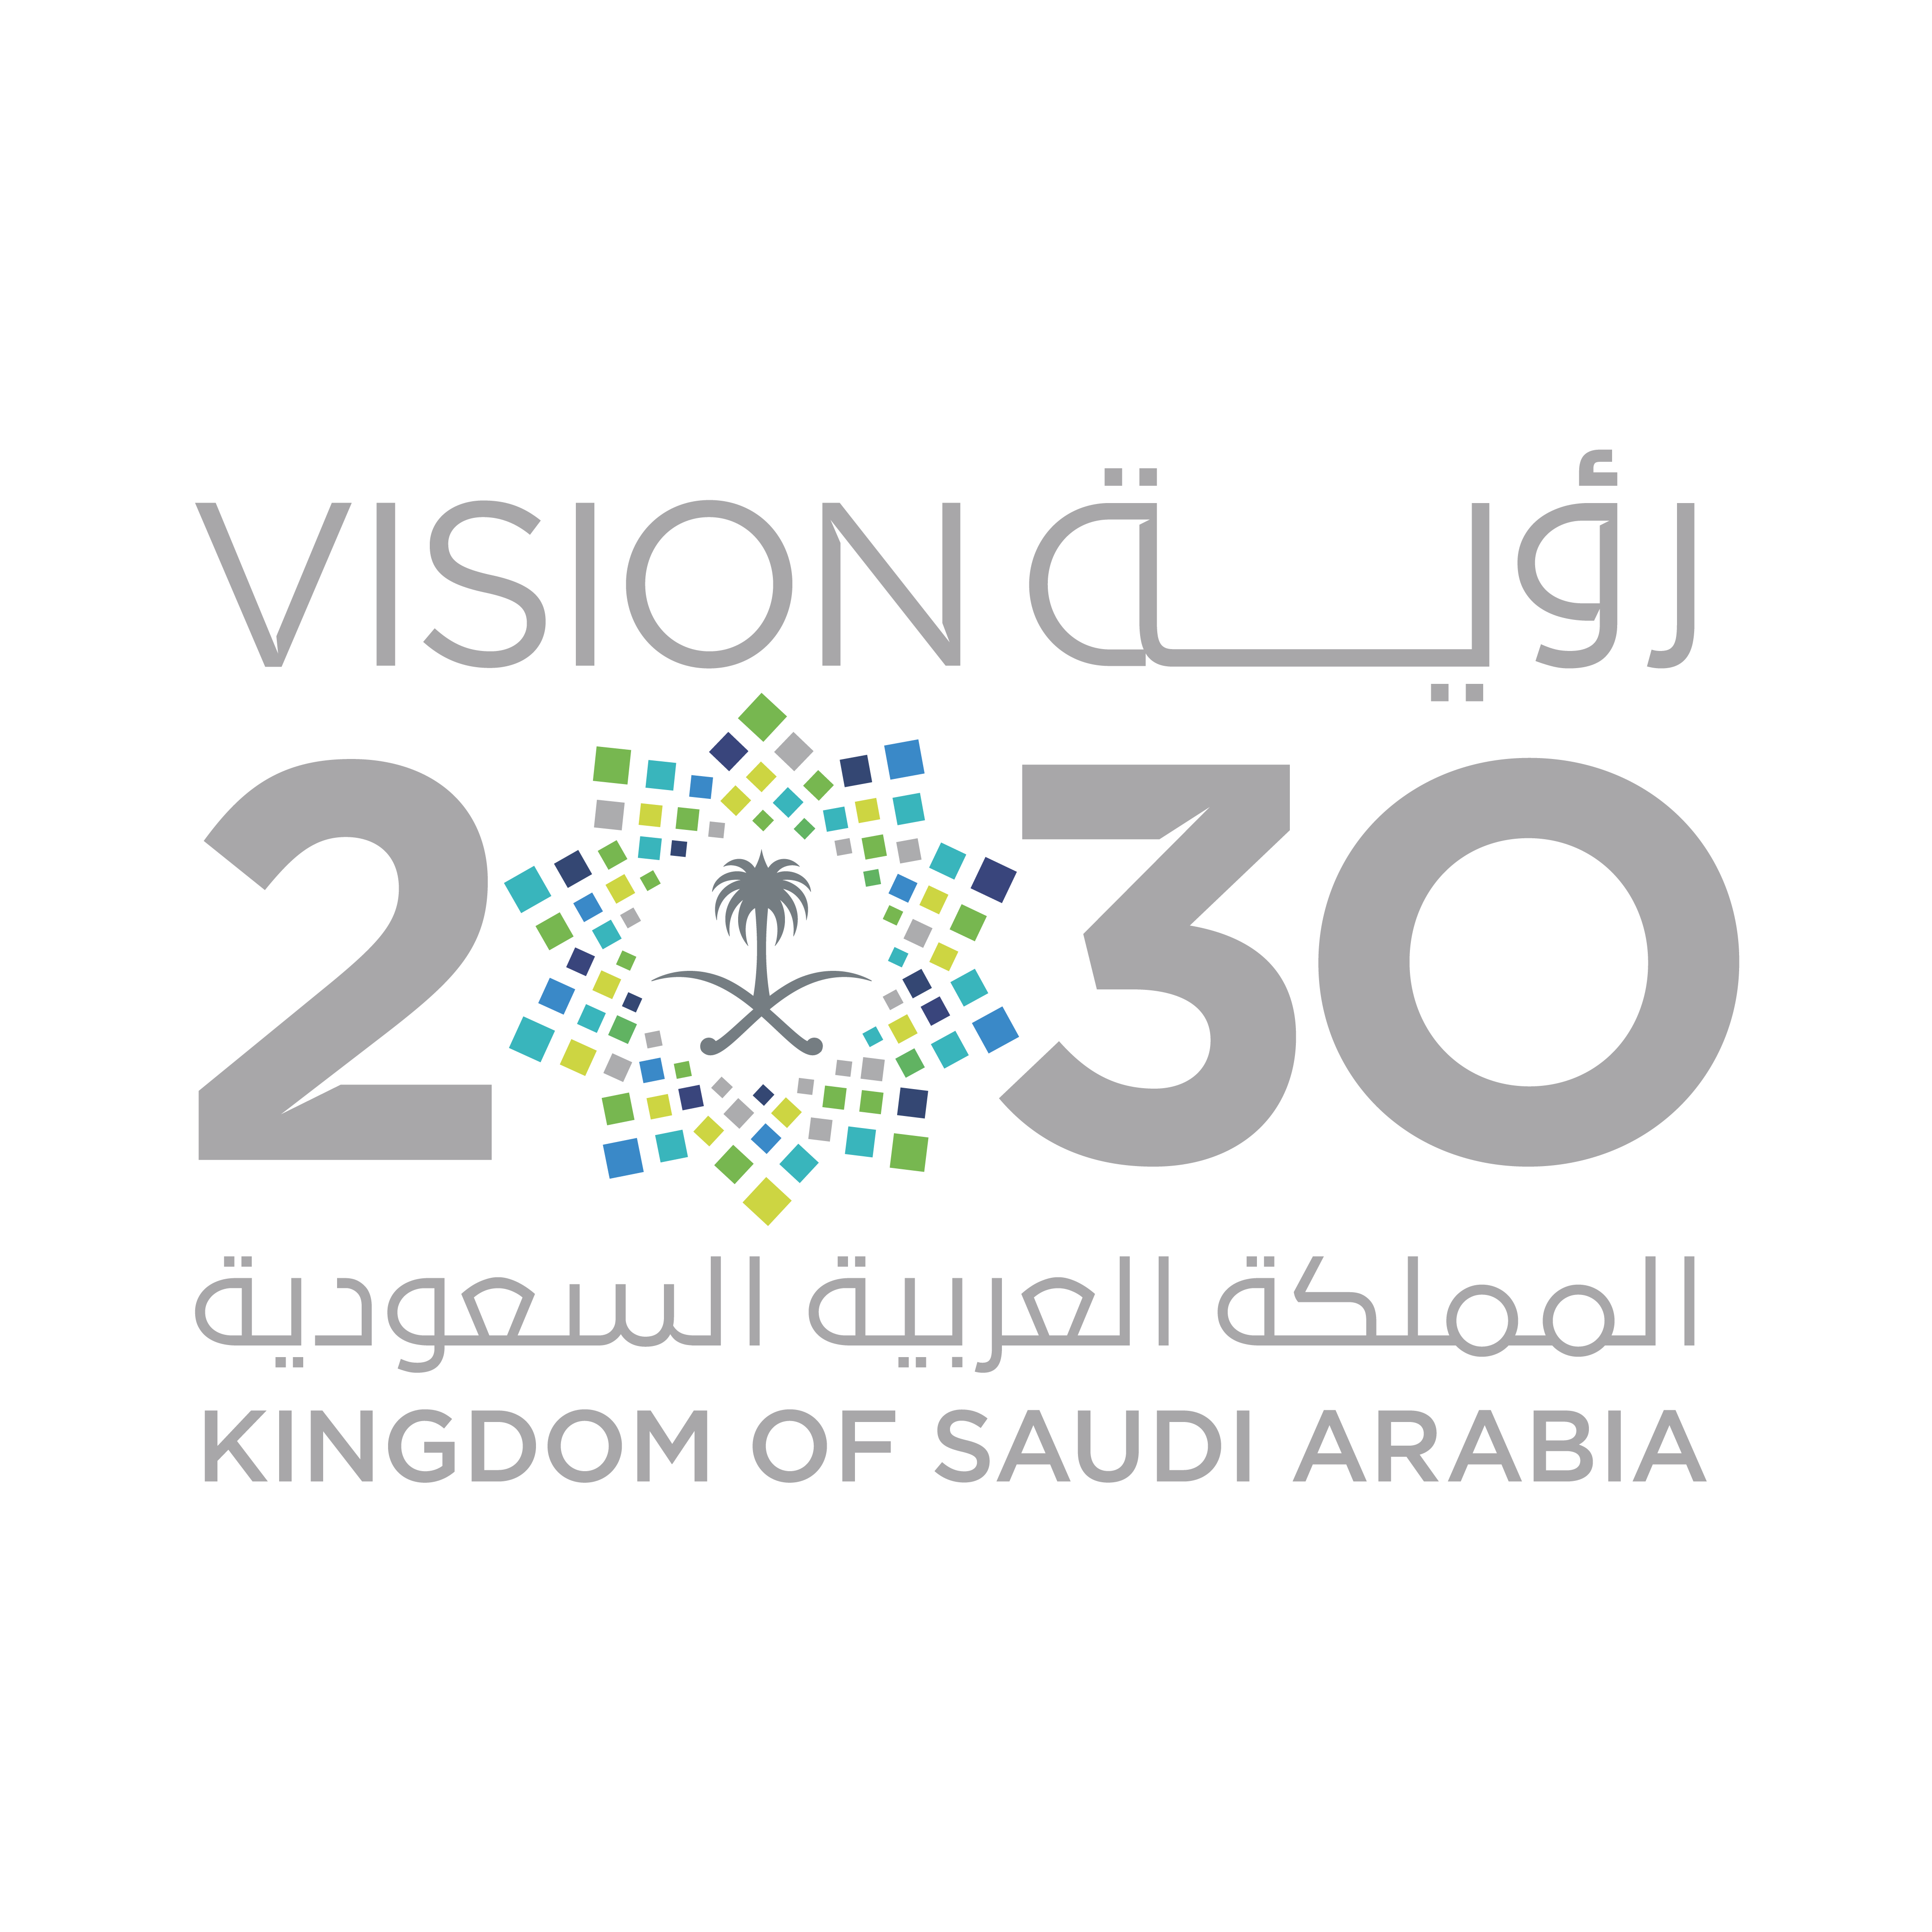 saudi vision 2030